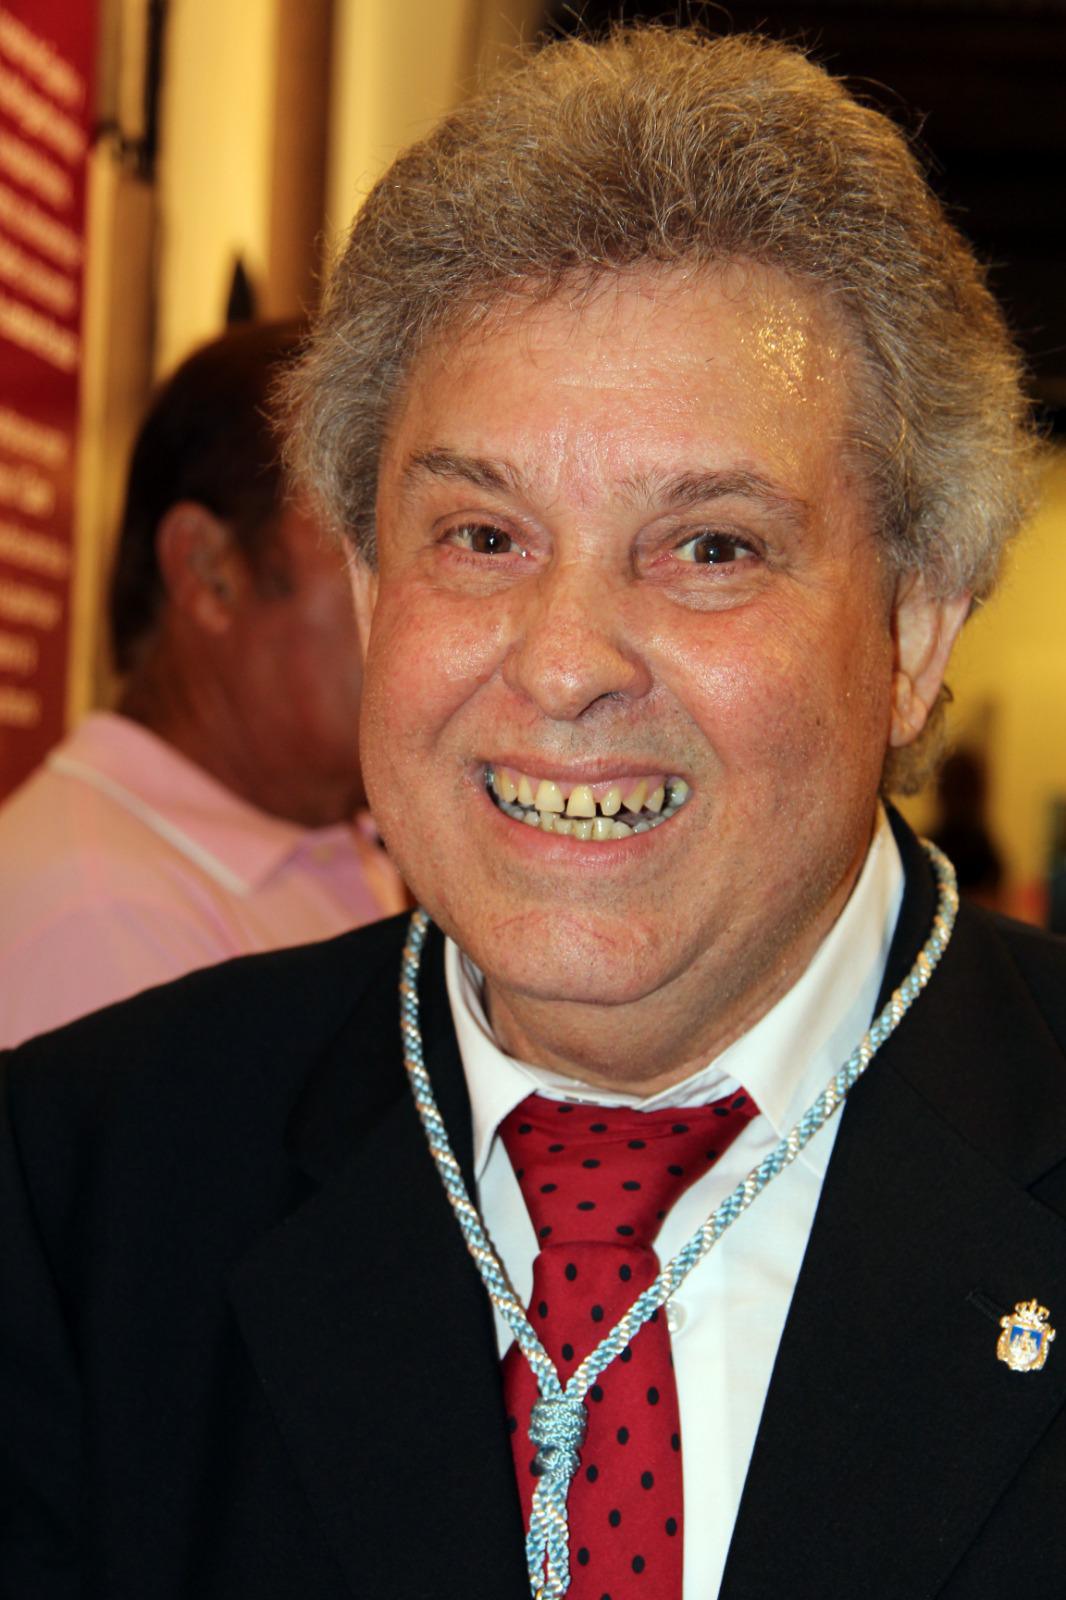 Fallece el cantaor Curro Malena, Hijo Predilecto de Lebrija, a la edad de 77 años